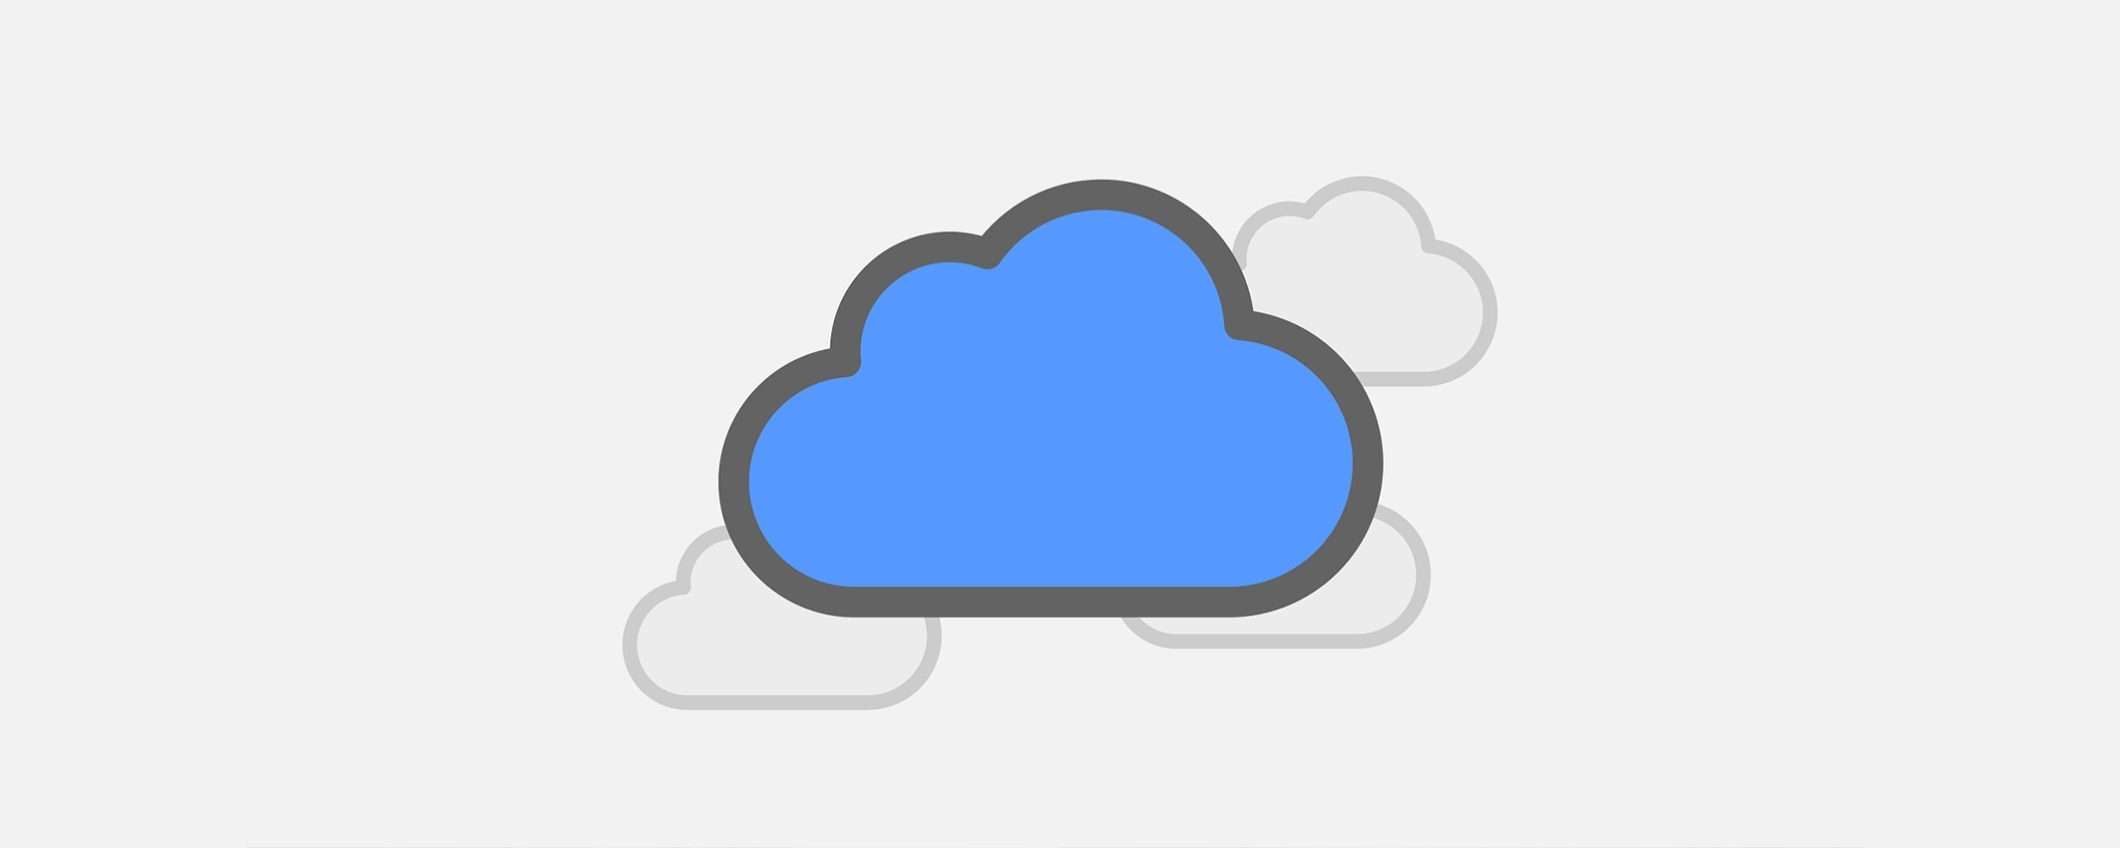 pCloud offre cloud storage senza abbonamento, a partire da 199€